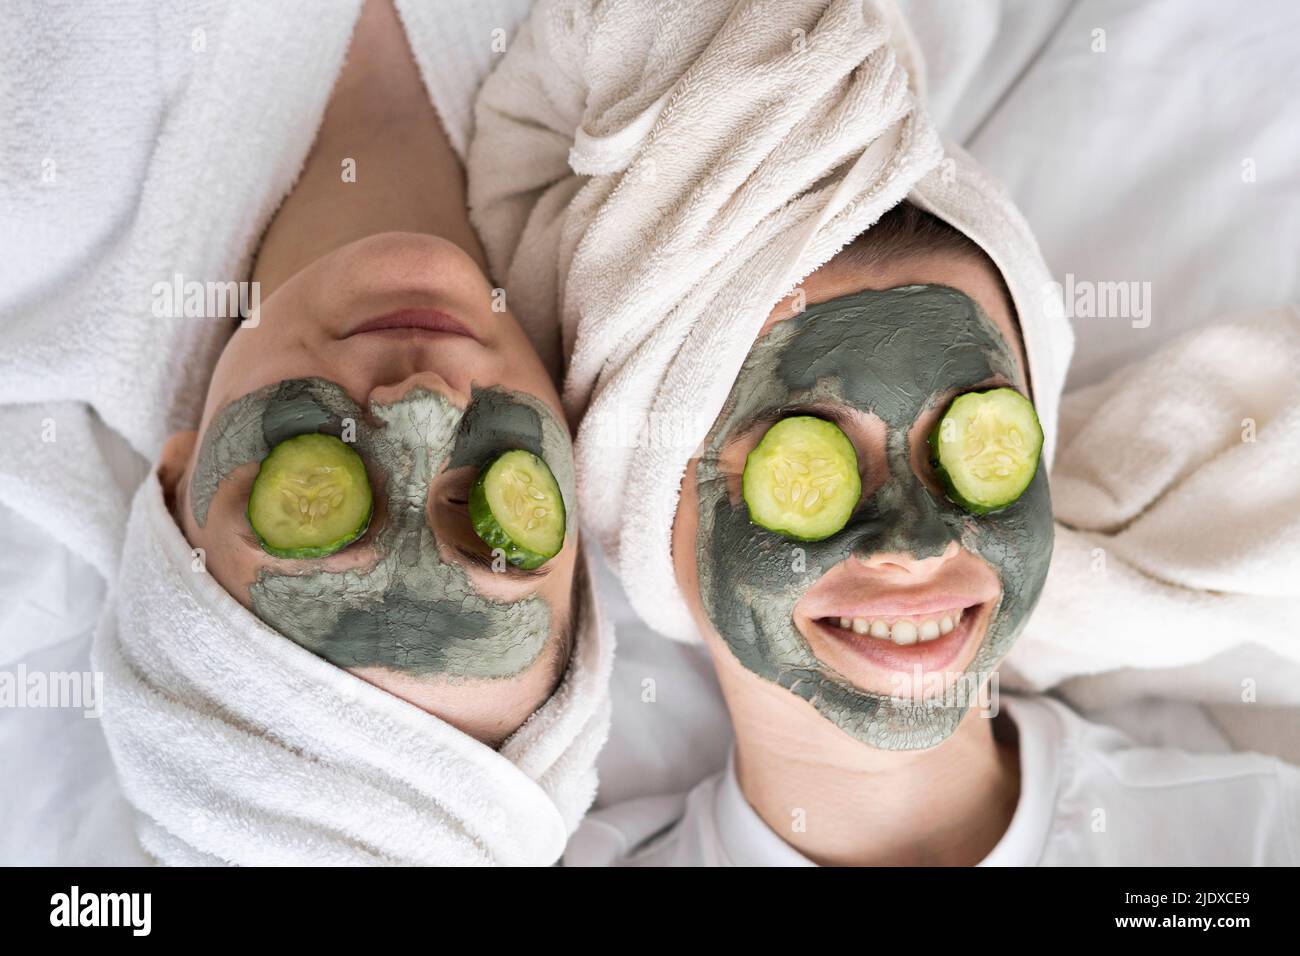 Des amis heureux portant des masques faciaux se détendent au lit à la maison Banque D'Images